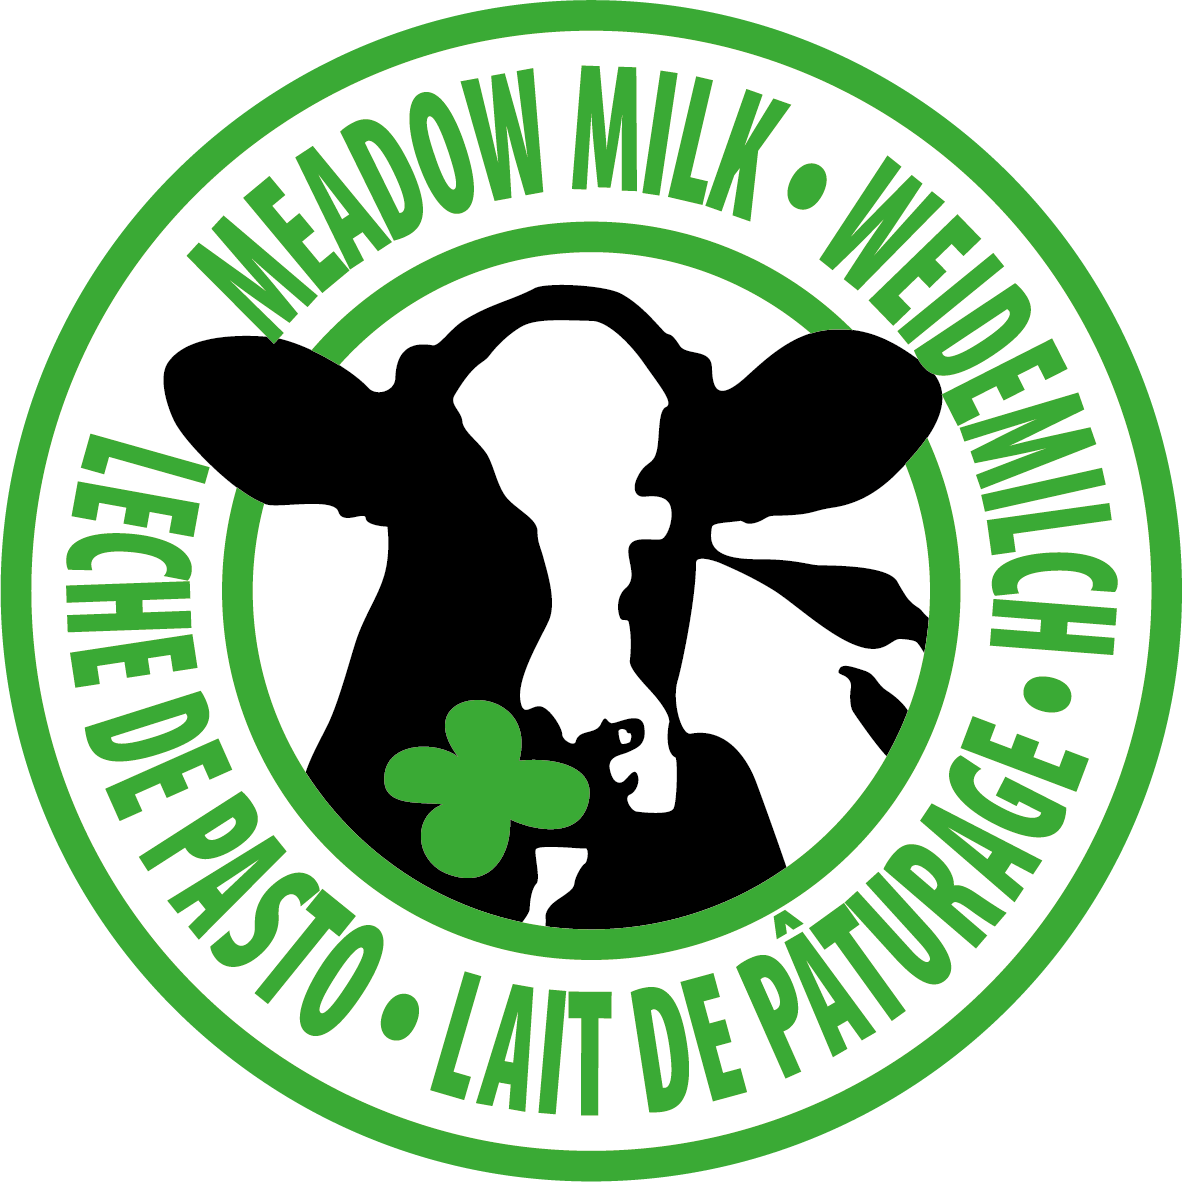 EN DE FR ES Meadow Milk Weidemilch Lait de Paturage Leche de Pasto